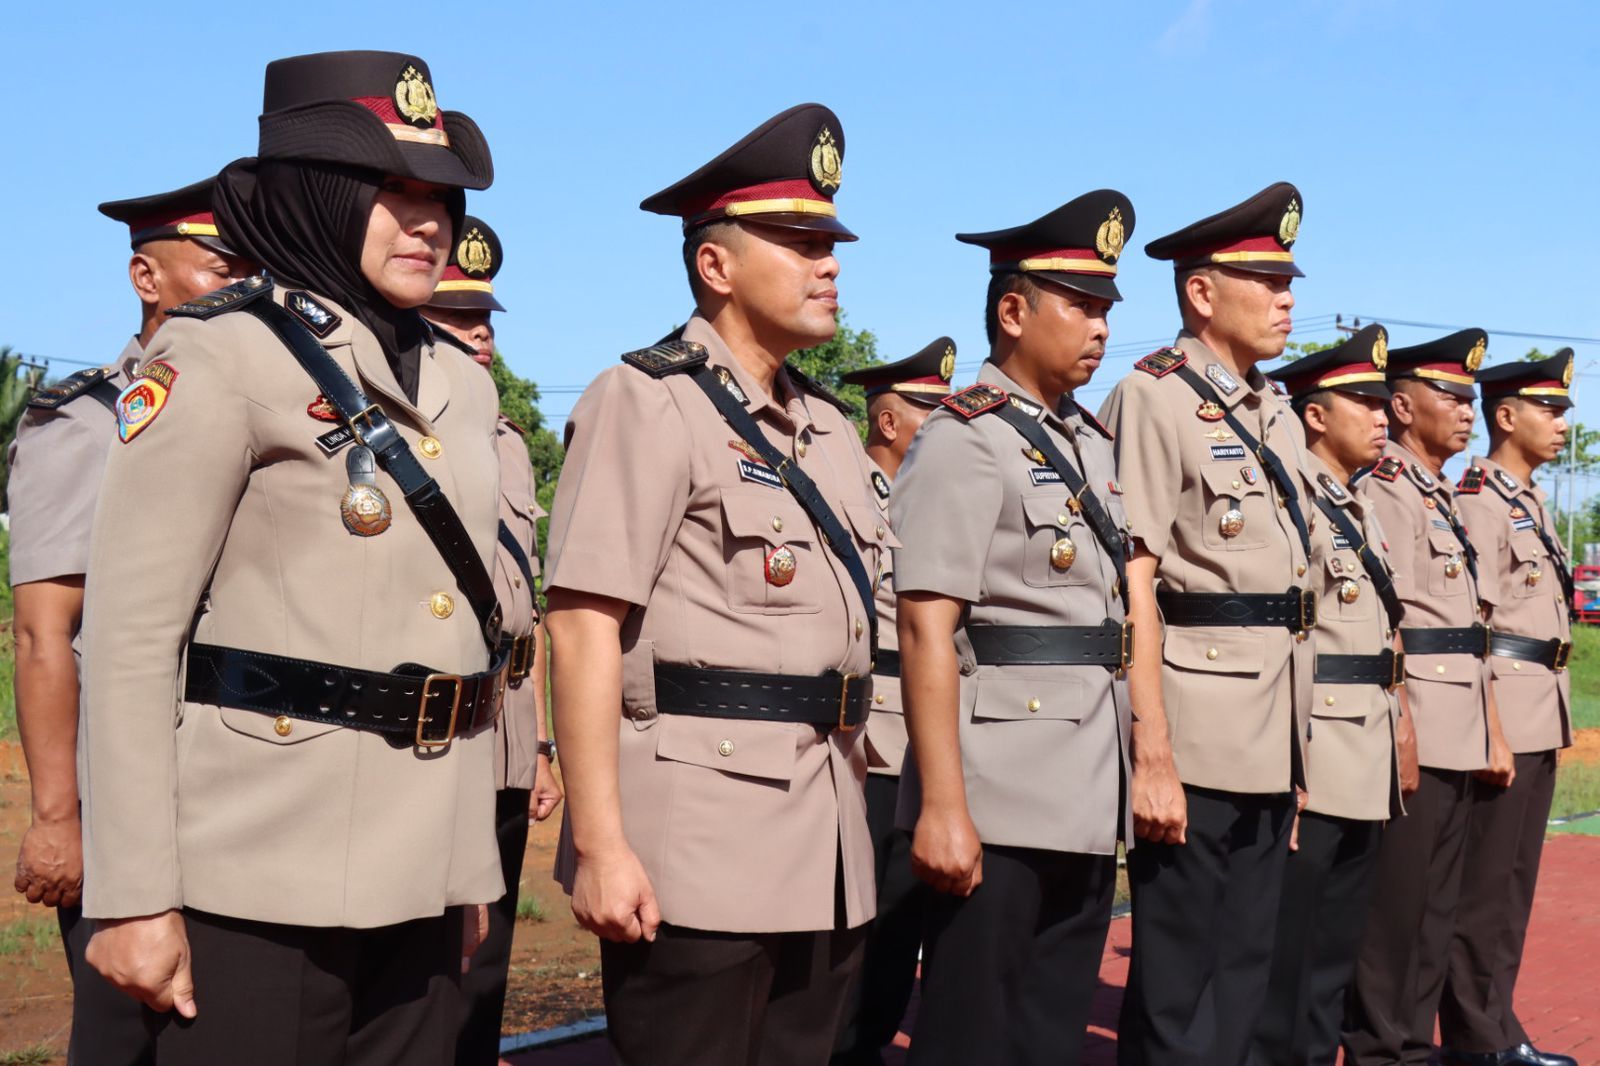  Kapolres Kubu Raya AKBP Wahyu Jati Wibowo memimpin serah terima jabatan enam pejabat di lingkungan Polres Kubu Raya di Lapangan Apel Mapolres Kubu Raya pada Senin, 27 Mei pukul 08.00 WIB.